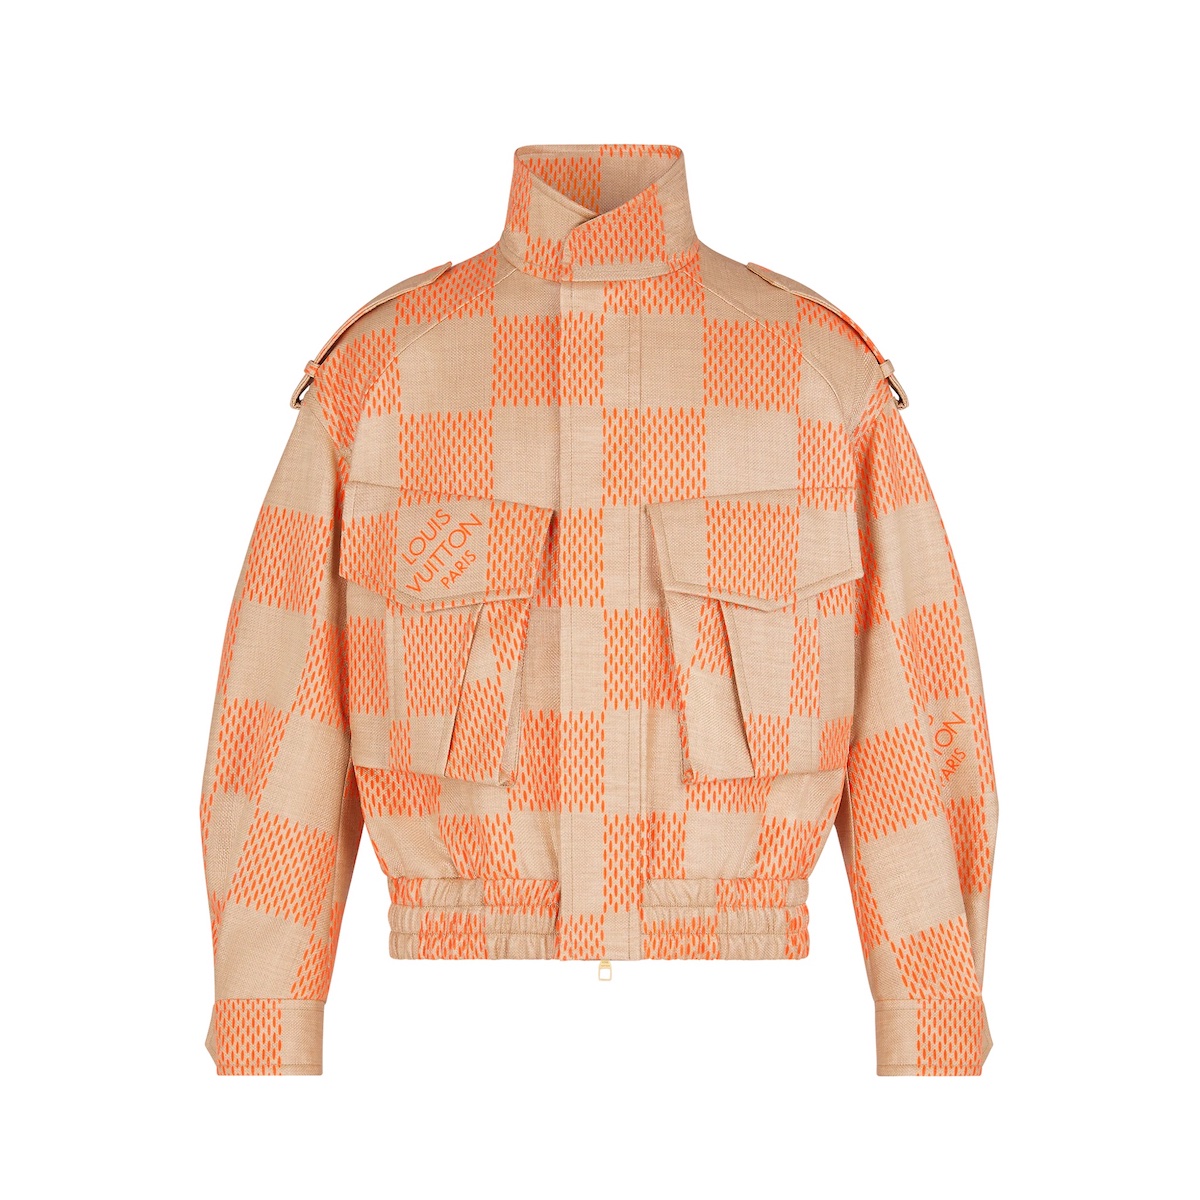 Men's Louis Vuitton Fluo Orange Varsity Jacket - Jacketars